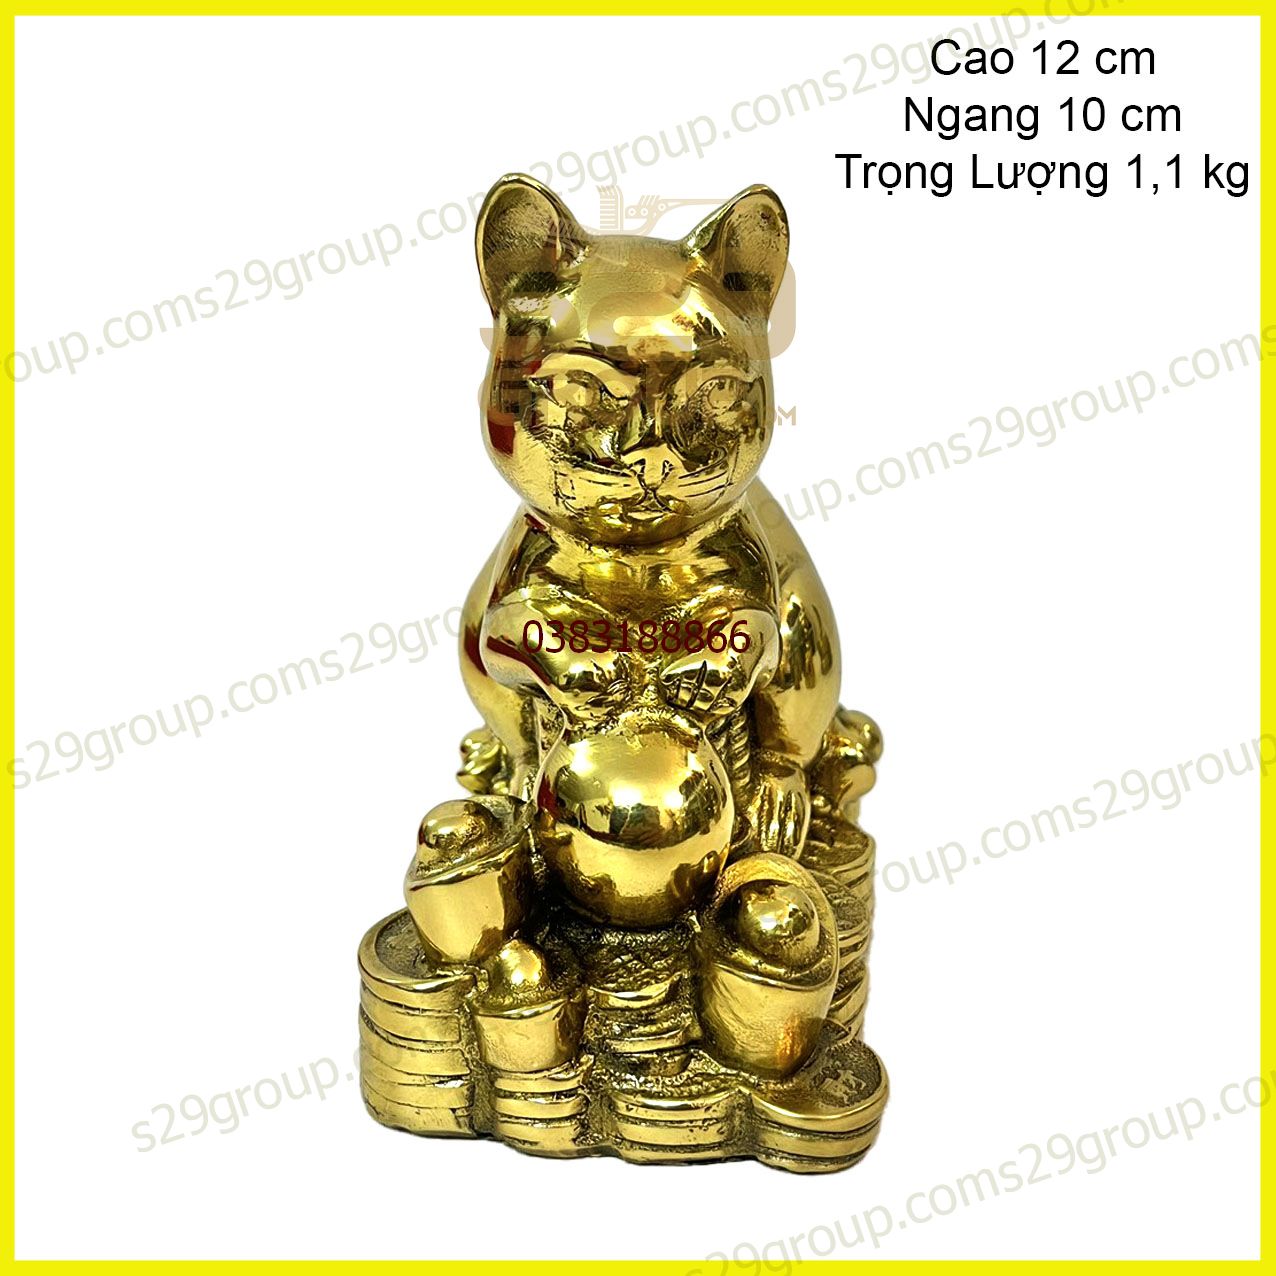 12 con giáp tượng mèo giáp ngọc băng đồng vàng nguyên chất